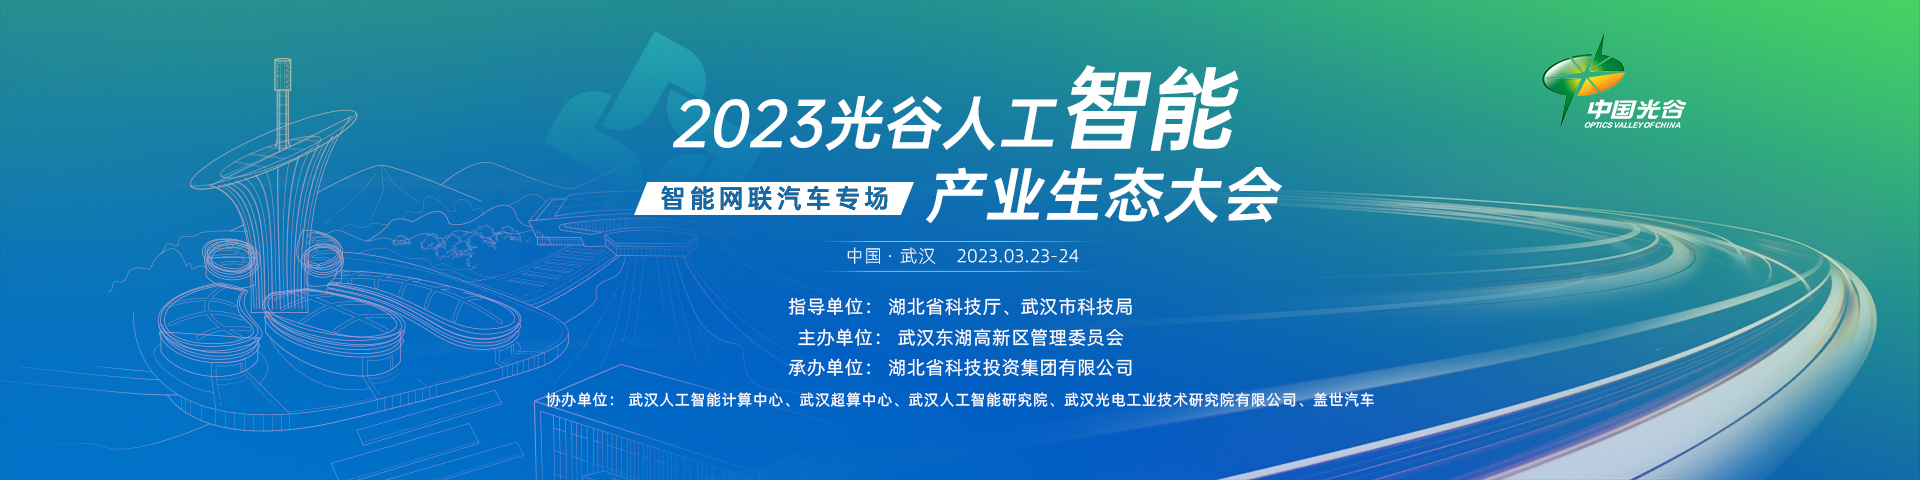 2023光谷人工智能产业生态大会——智能网联汽车专场